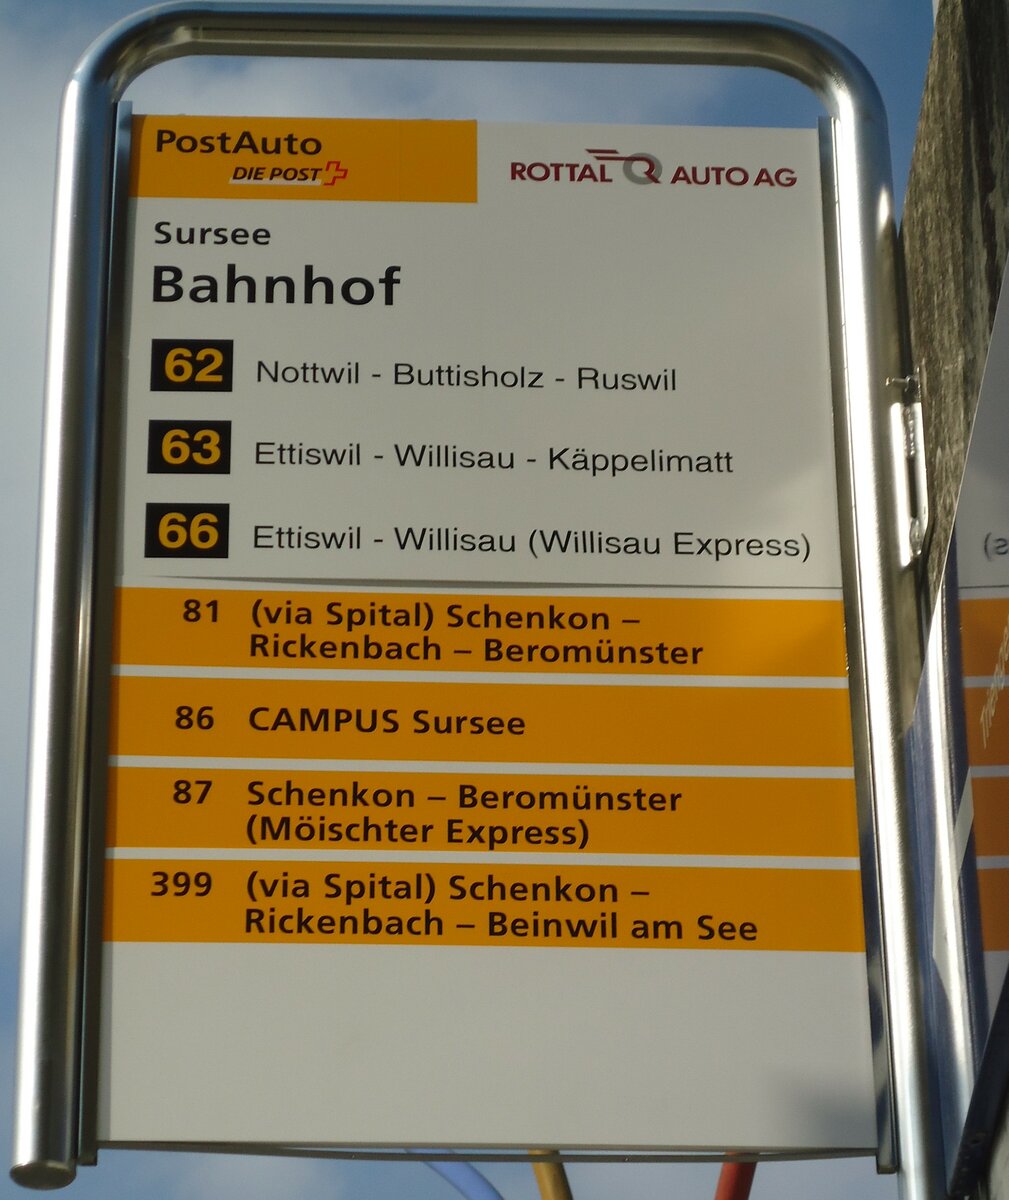 (133'050) - PostAuto/ROTTAL AUTO AG-Haltestellenschild - Sursee, Bahnhof - am 11. Mrz 2011